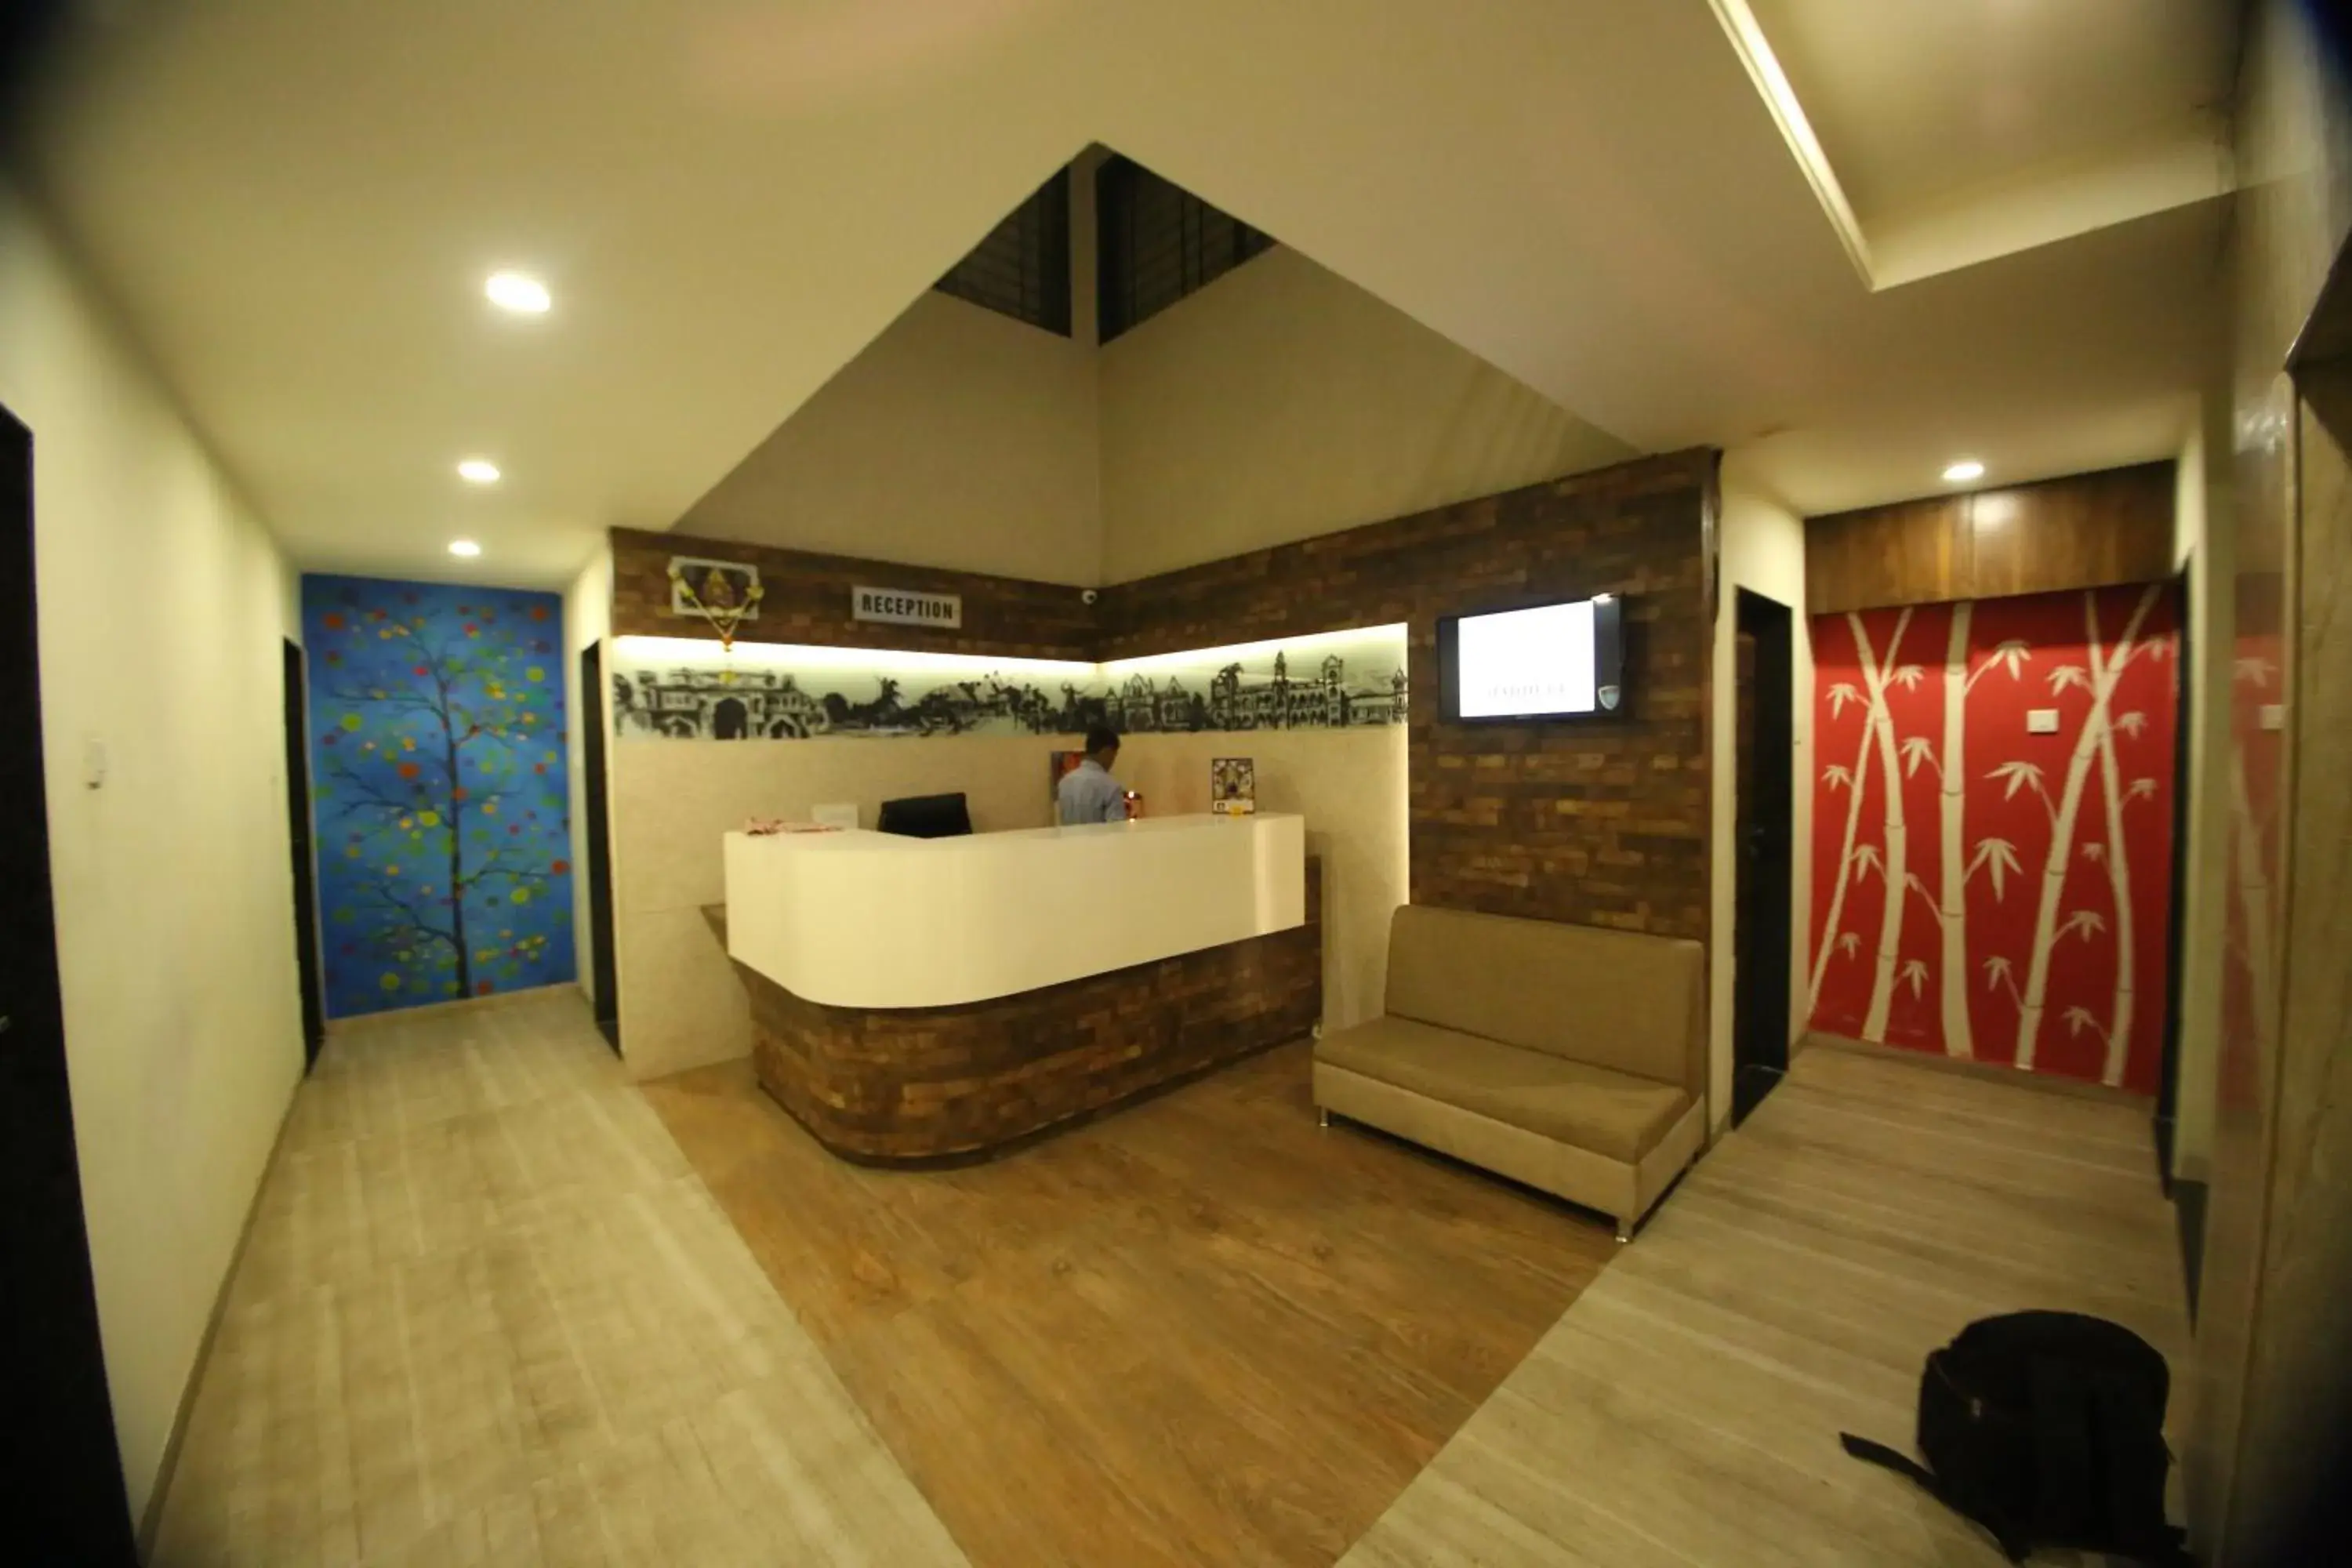 Lobby or reception, Bathroom in Hotel Madhuri Executive